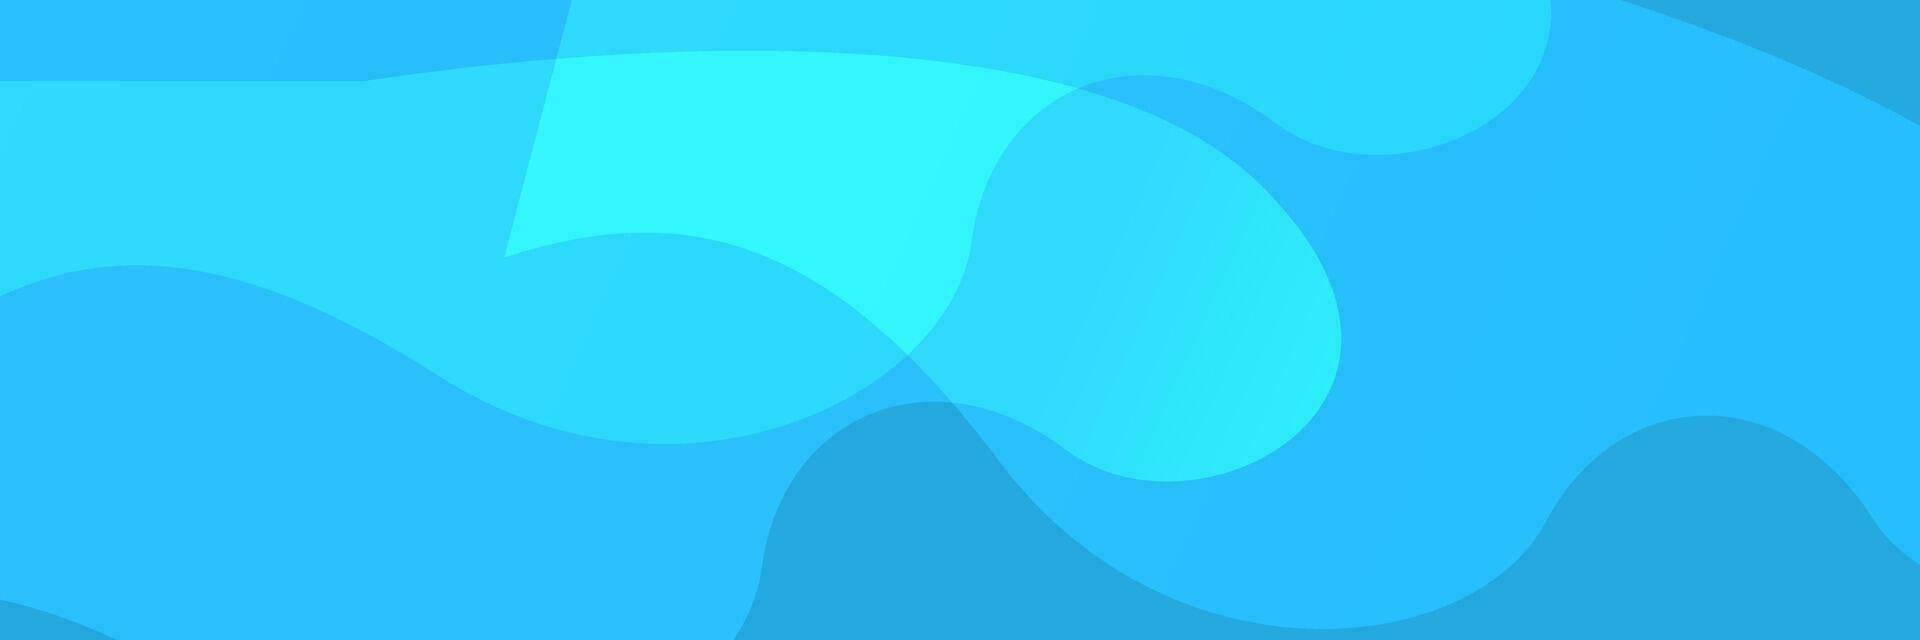 abstrato moderno azul orgânico fundo vetor